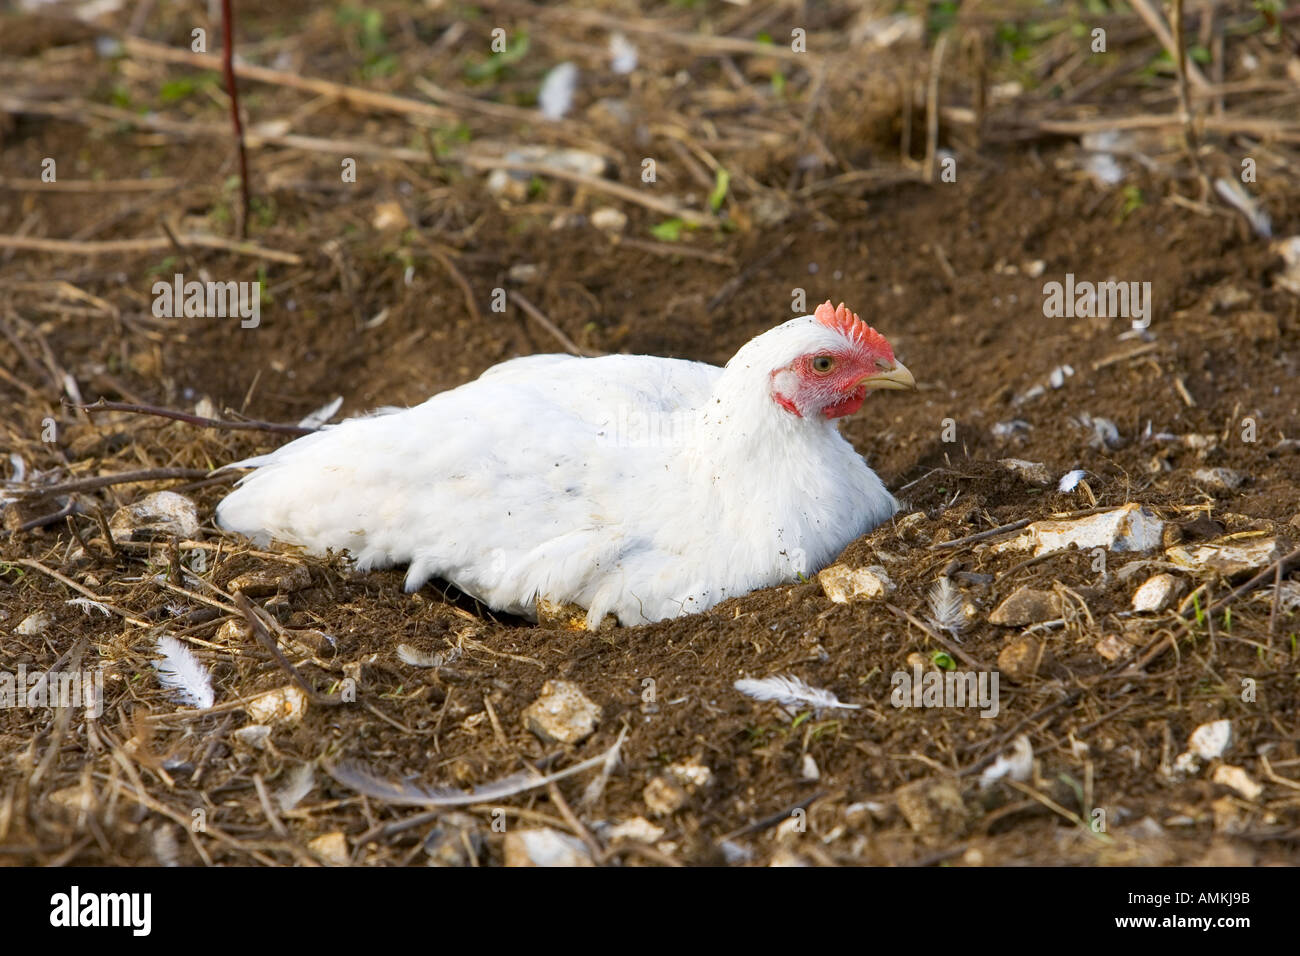 Freilaufenden Hühner Rasse Isa 257 in Staub Baden an der Sheepdrove Bio Bauernhof Lambourn in England Stockfoto